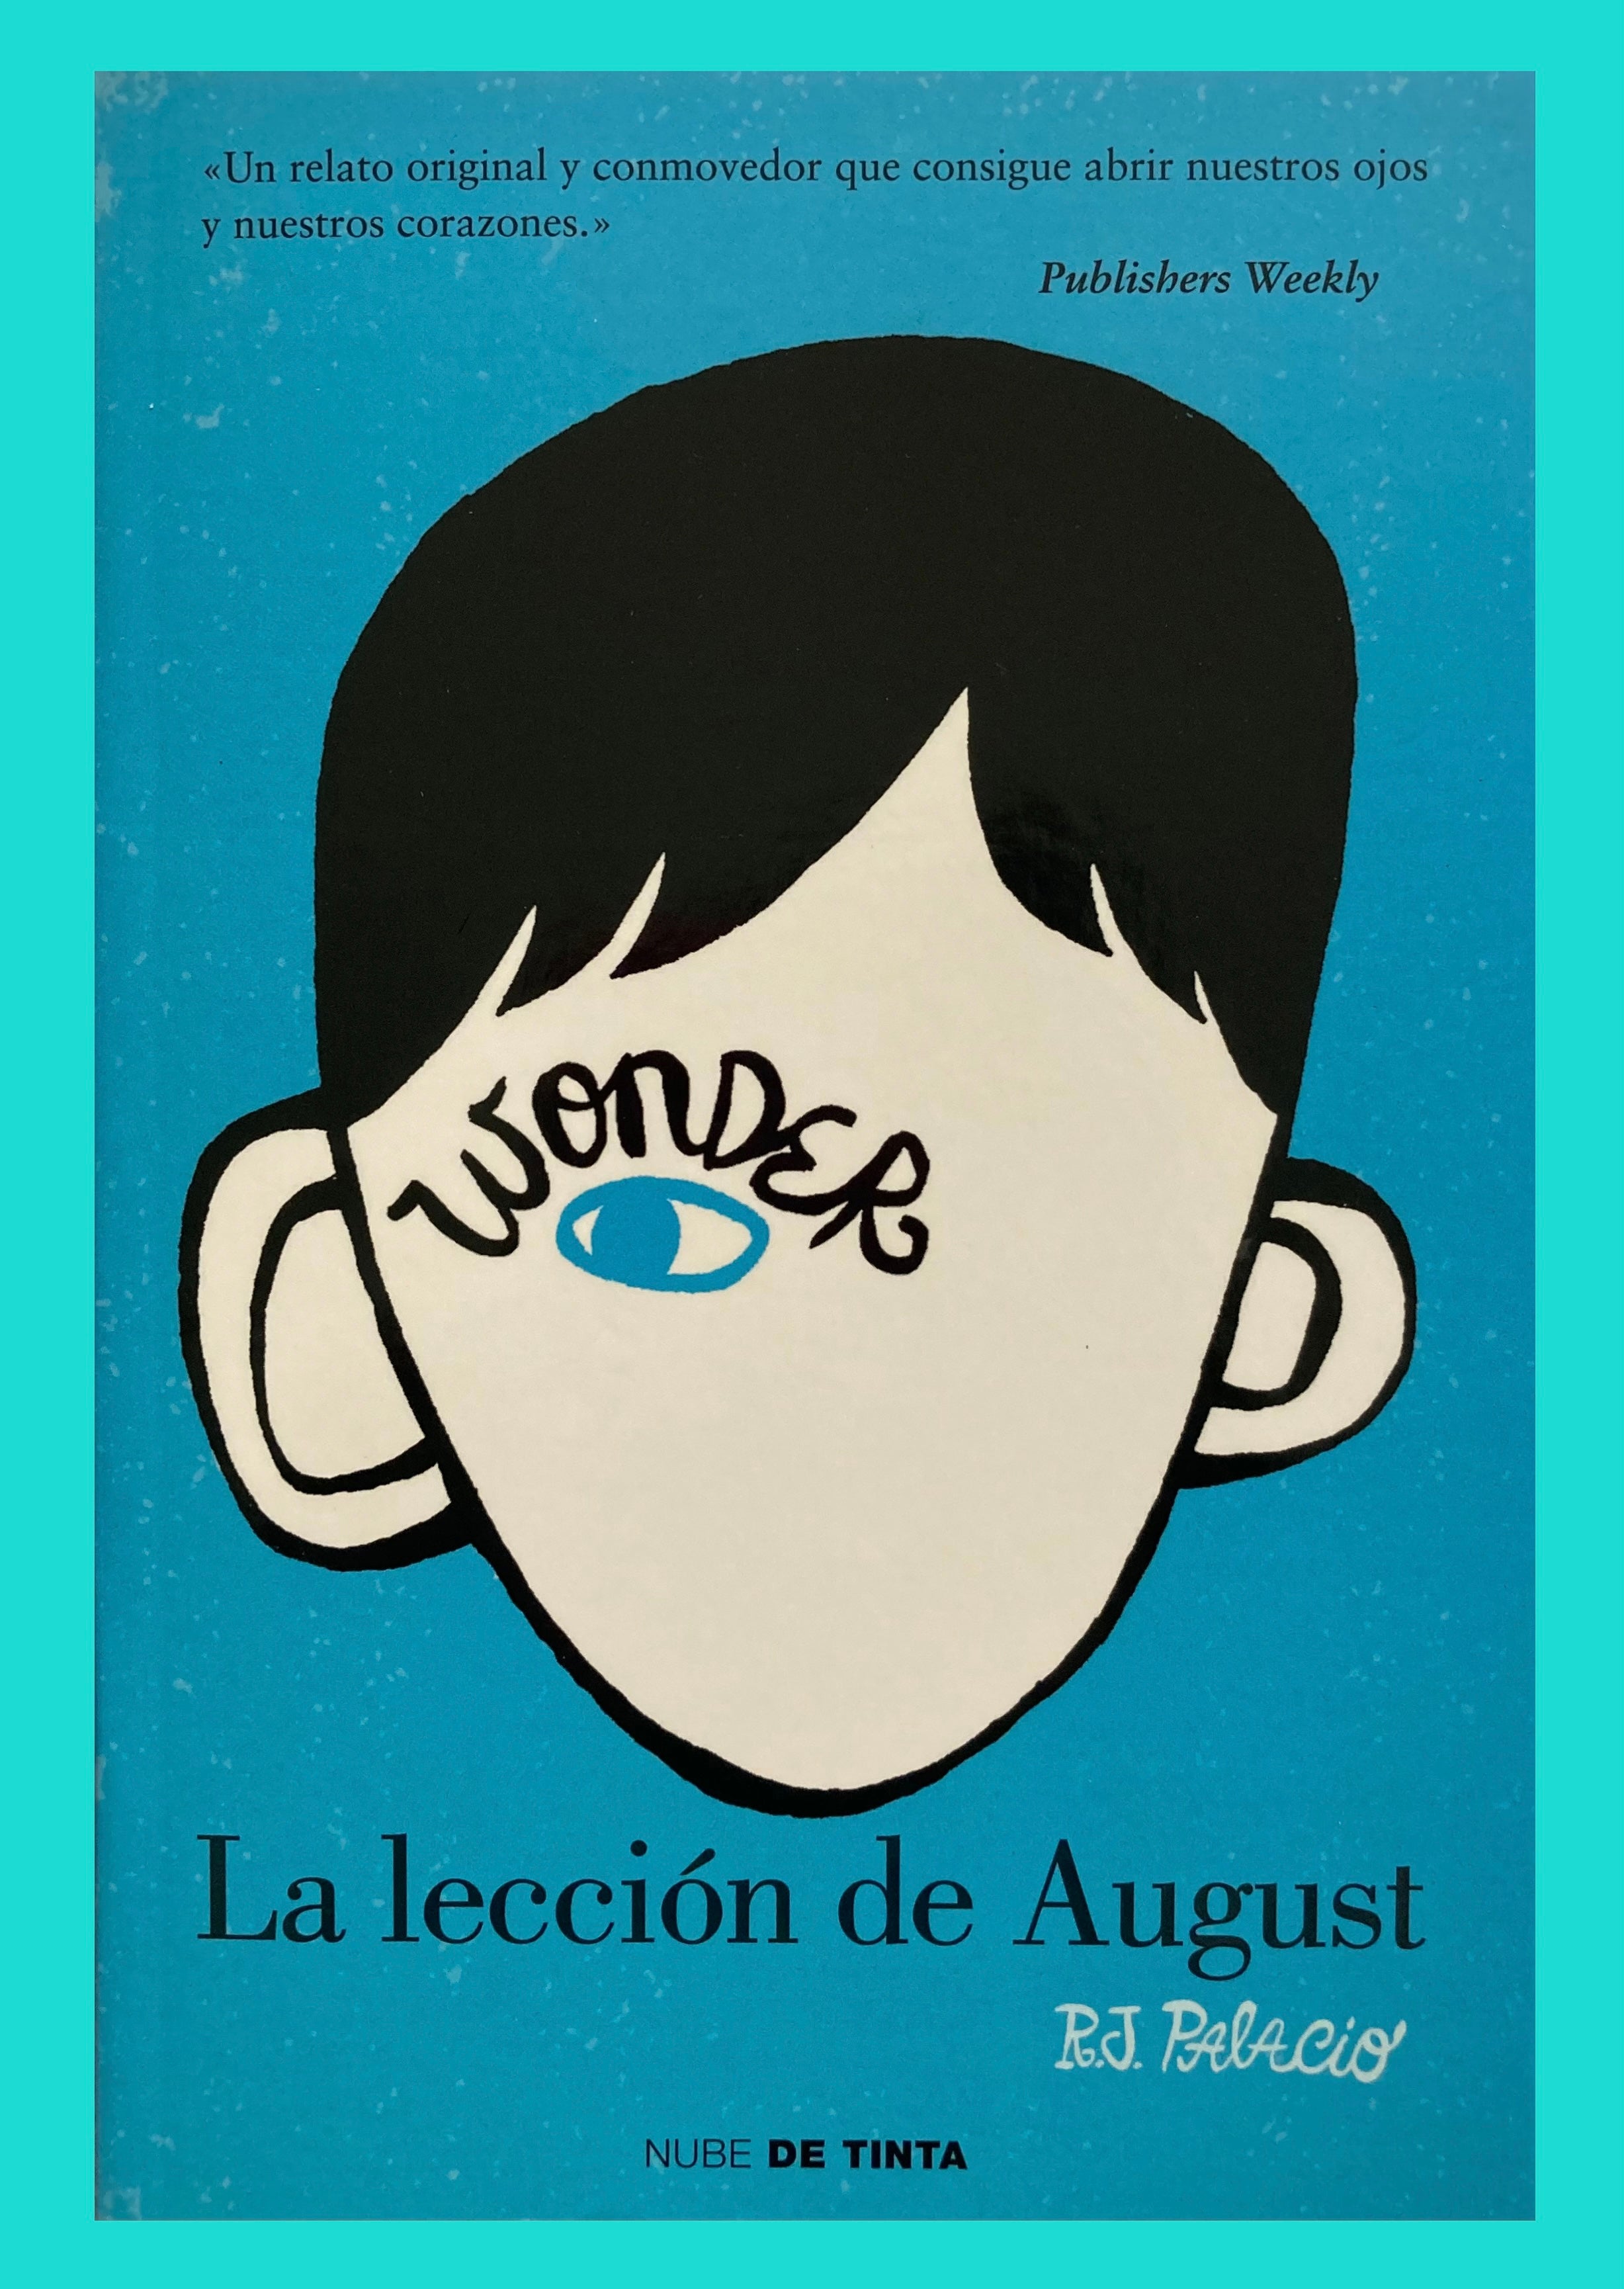 La lección de August (Wonder) de R.J Palacio